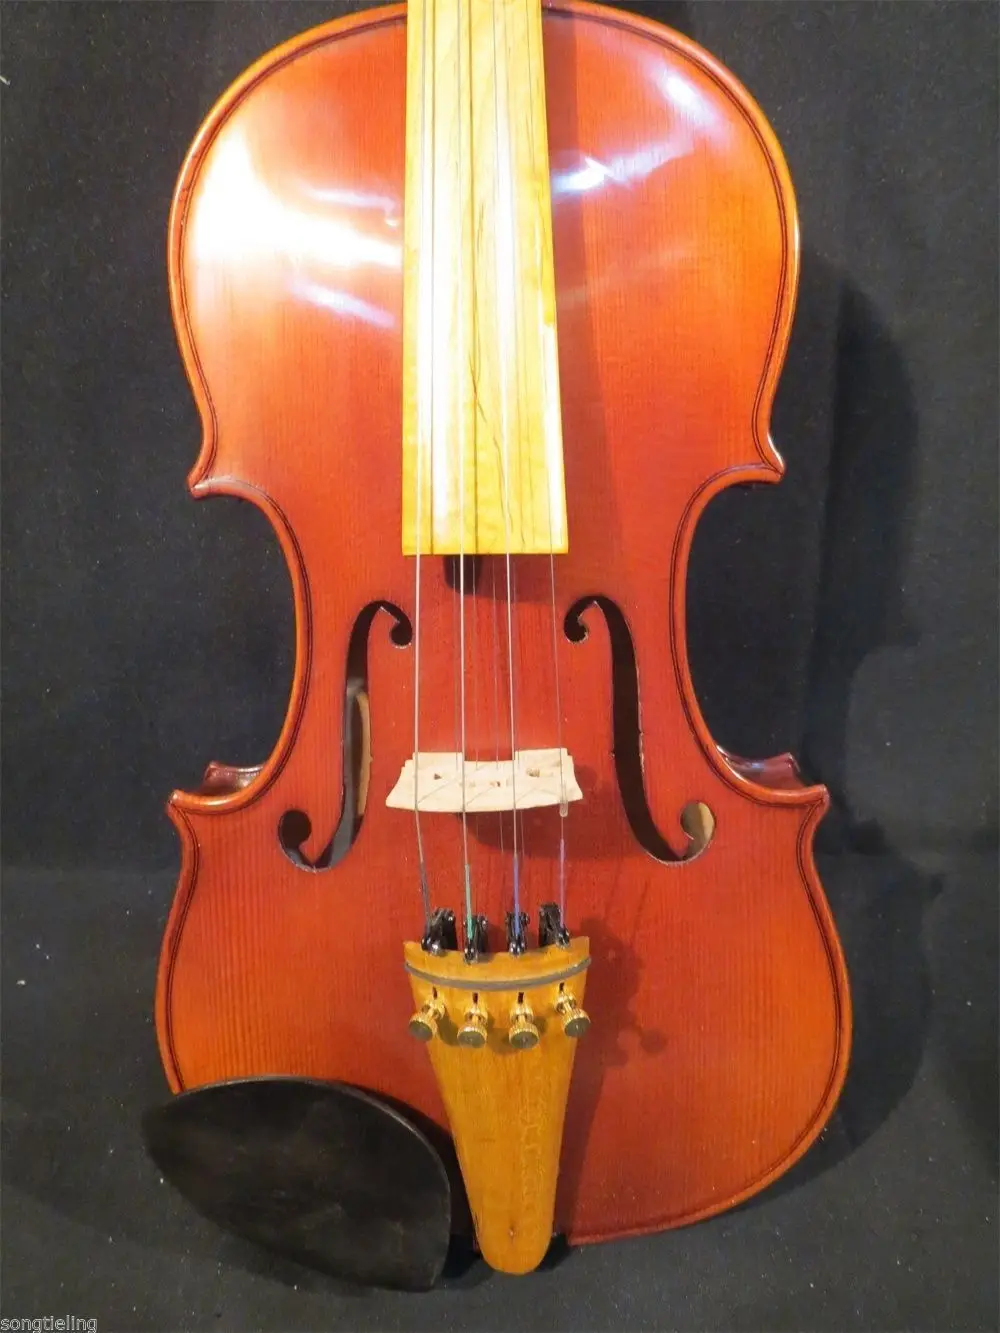 Стиль барокко песня Maestro 4*4 струны 4/4 скрипки для профессионального концертного исполнения #10266